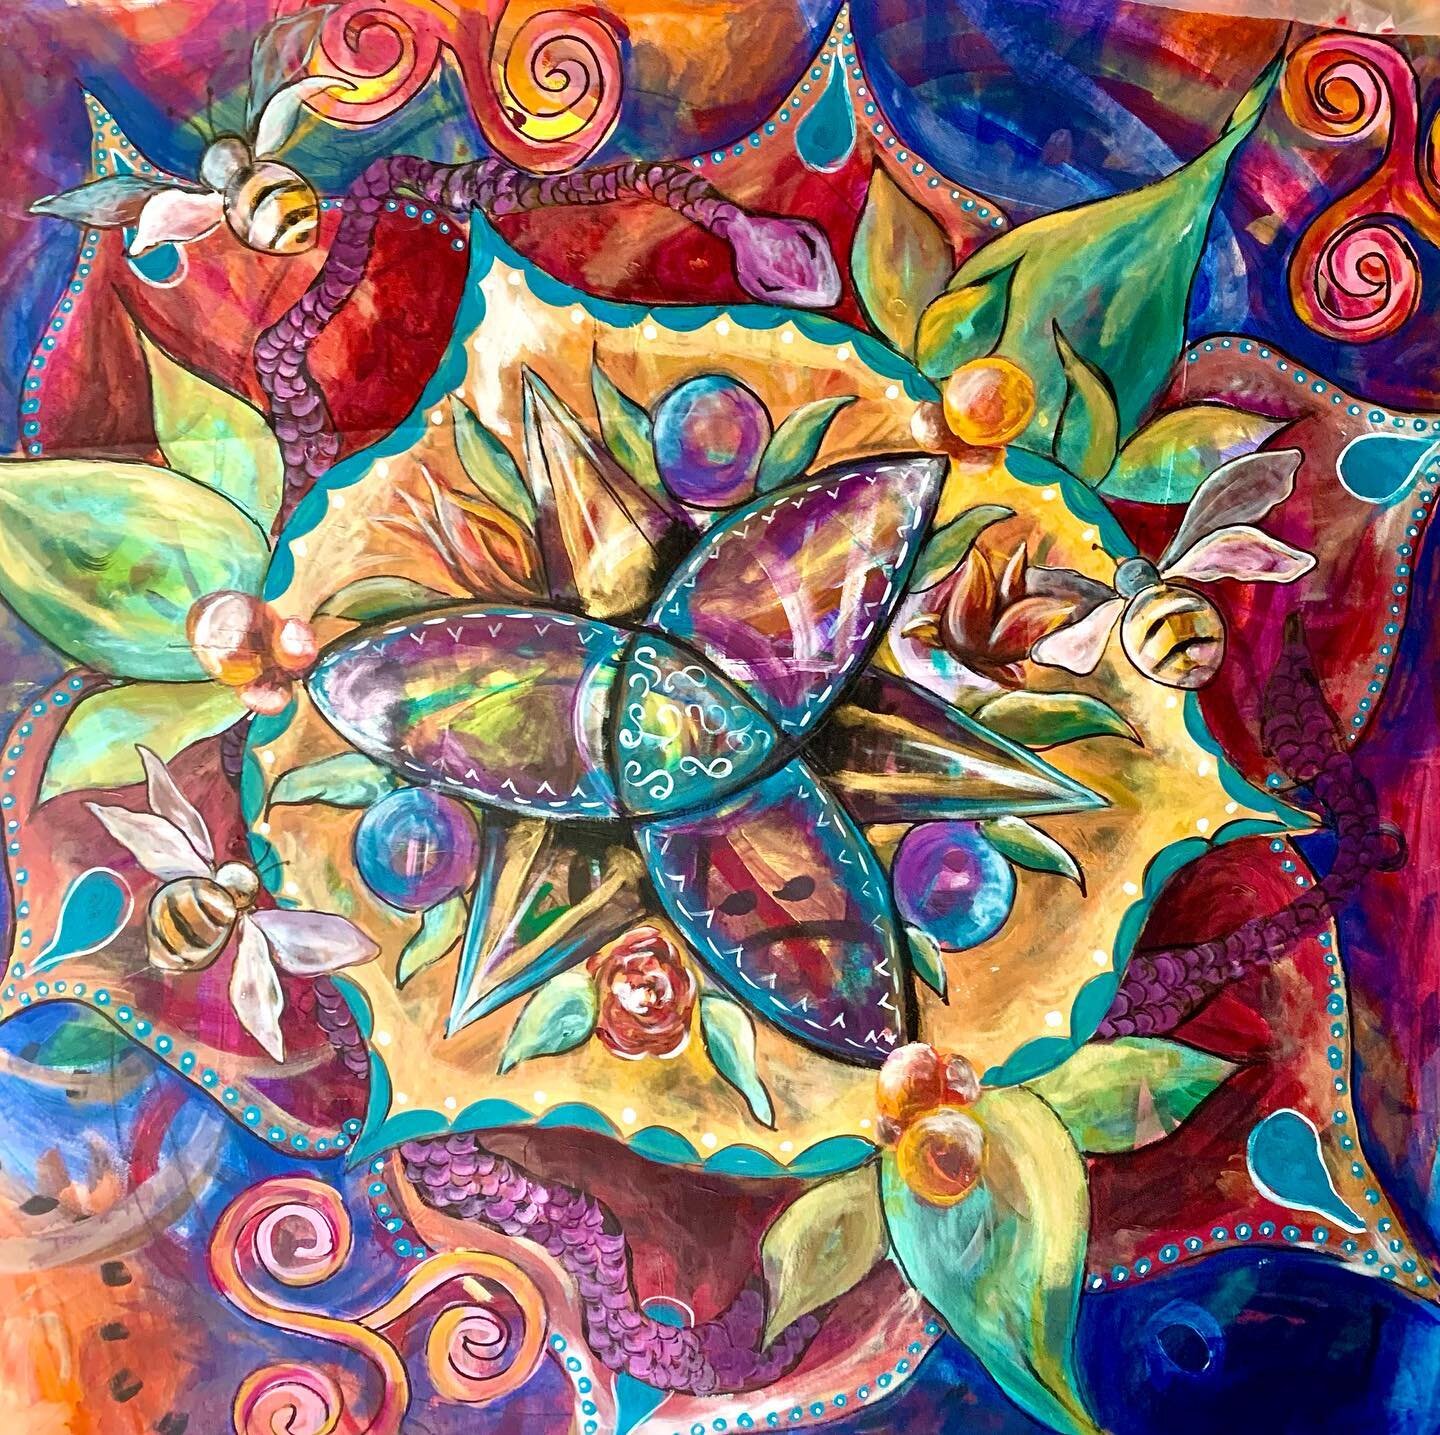 Mandala-in-progress. &ldquo;Emergence&rdquo; 50&rdquo;x50&rdquo; acrylic on canvas